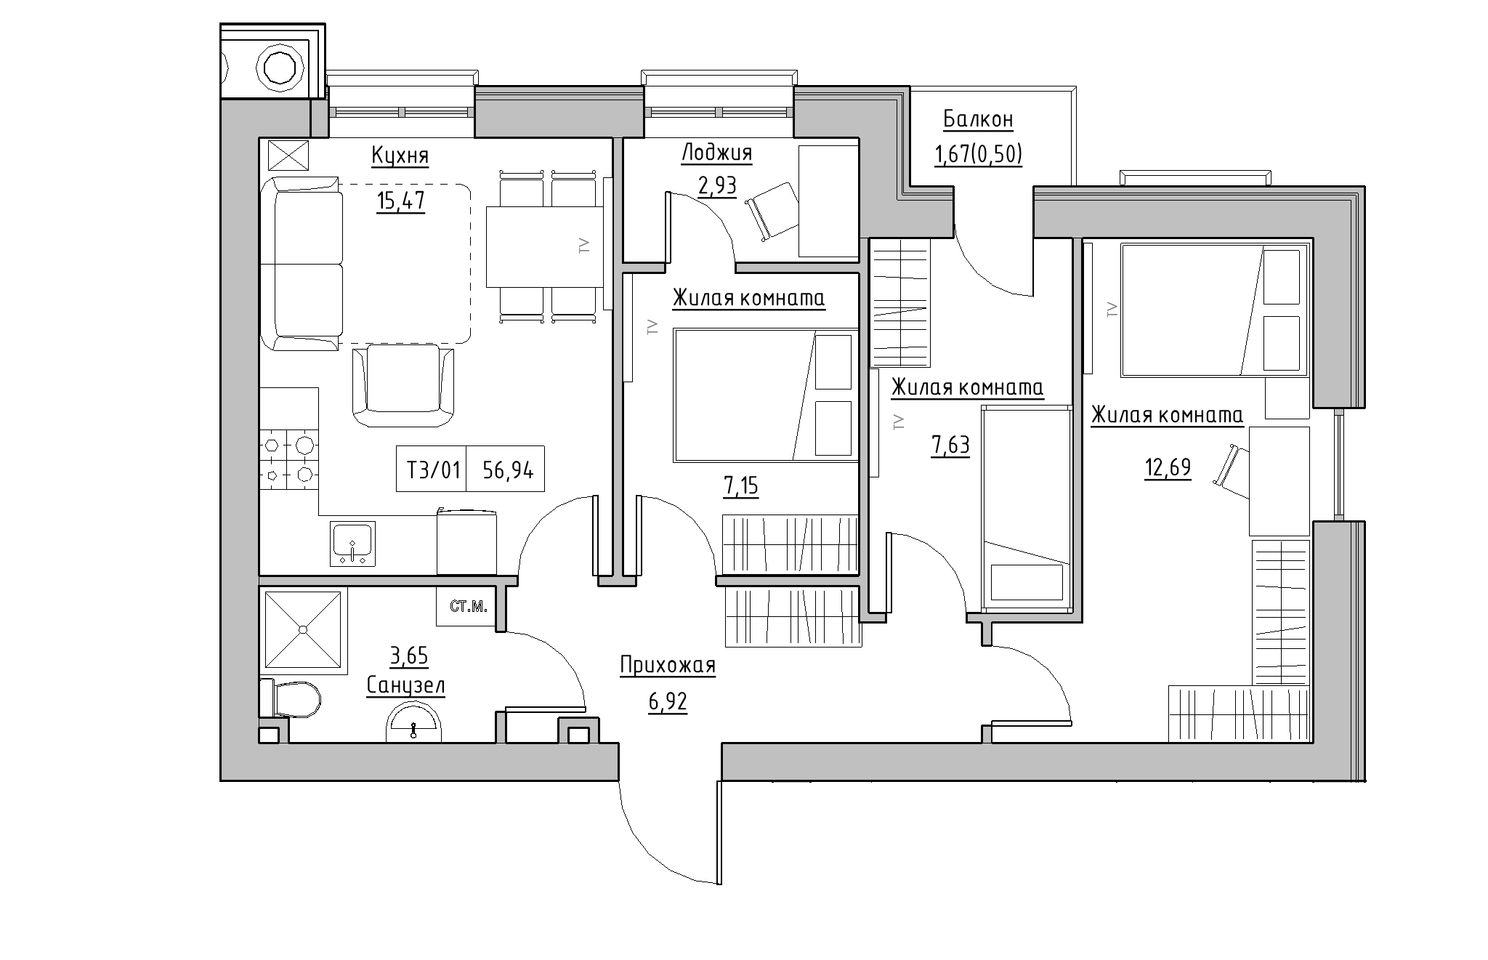 Планування 3-к квартира площею 56.94м2, KS-010-03/0008.